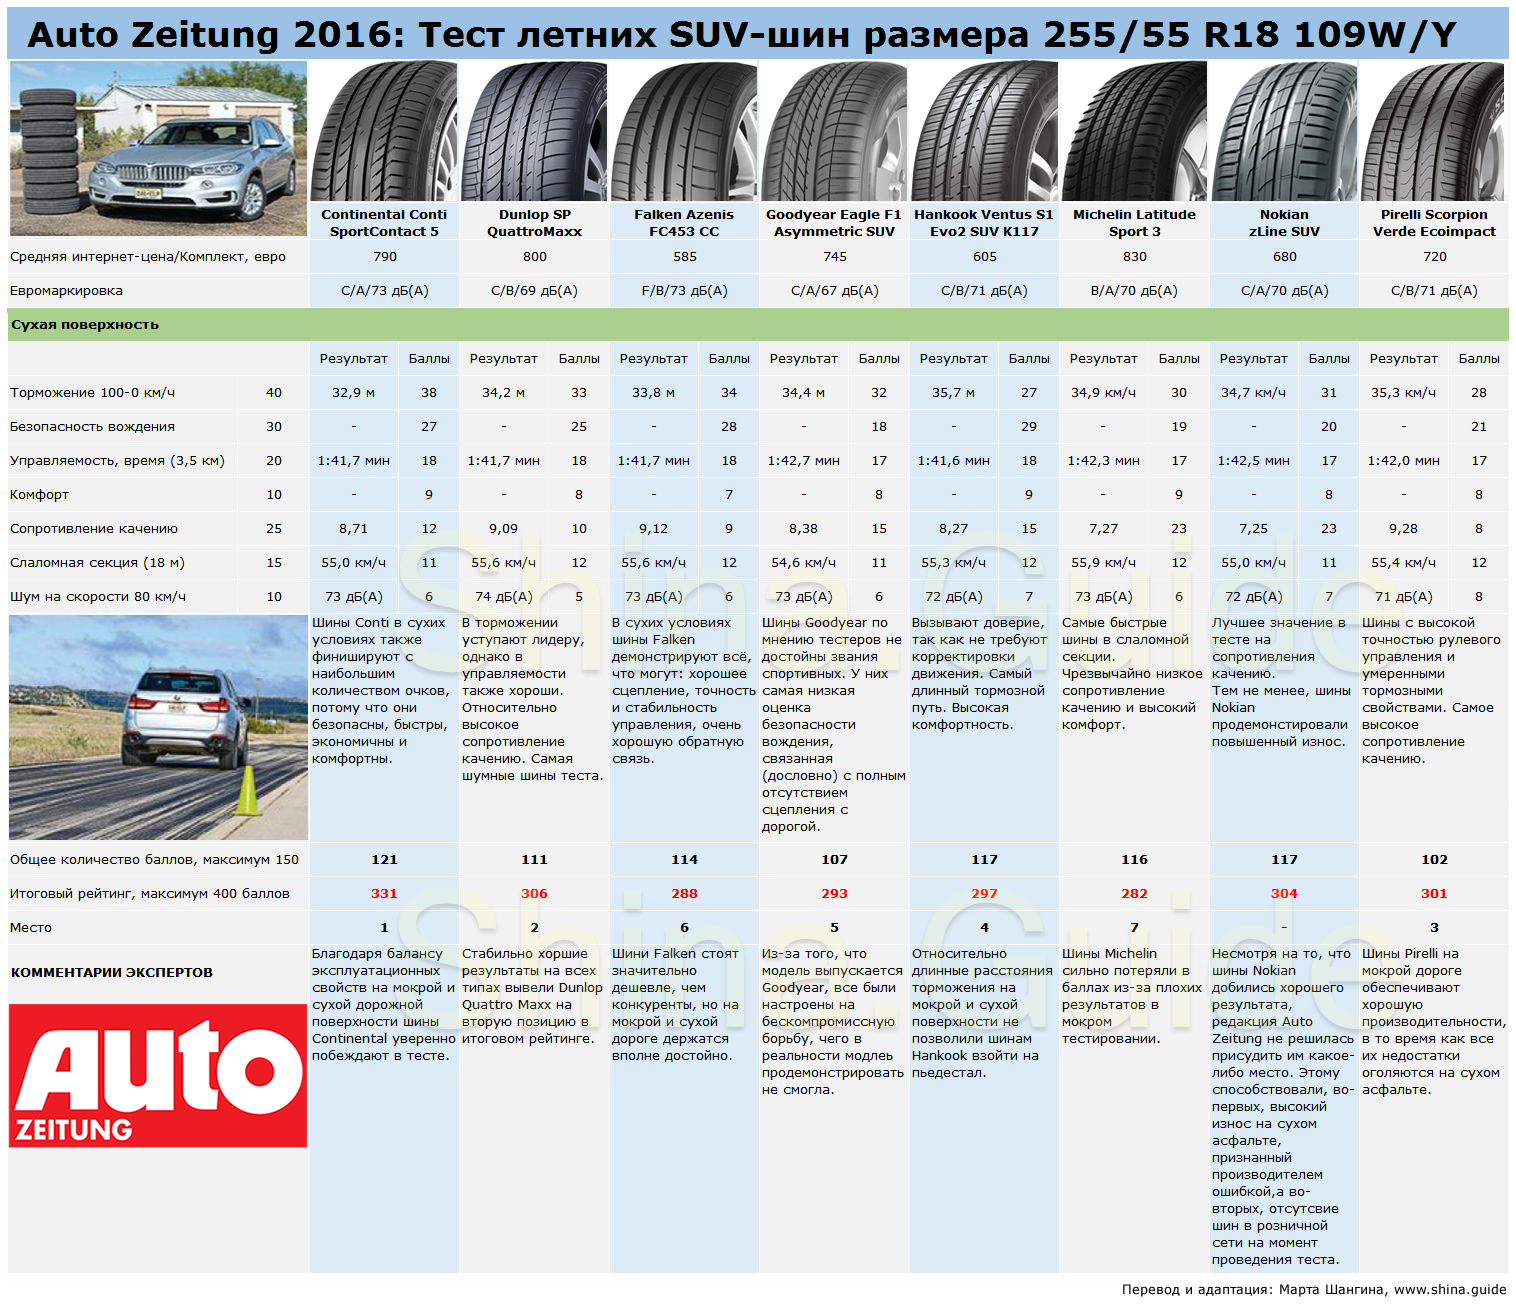 Тесты SUV-шин Auto Zeitung 2016 на сухой поверхности и итоги всего теста